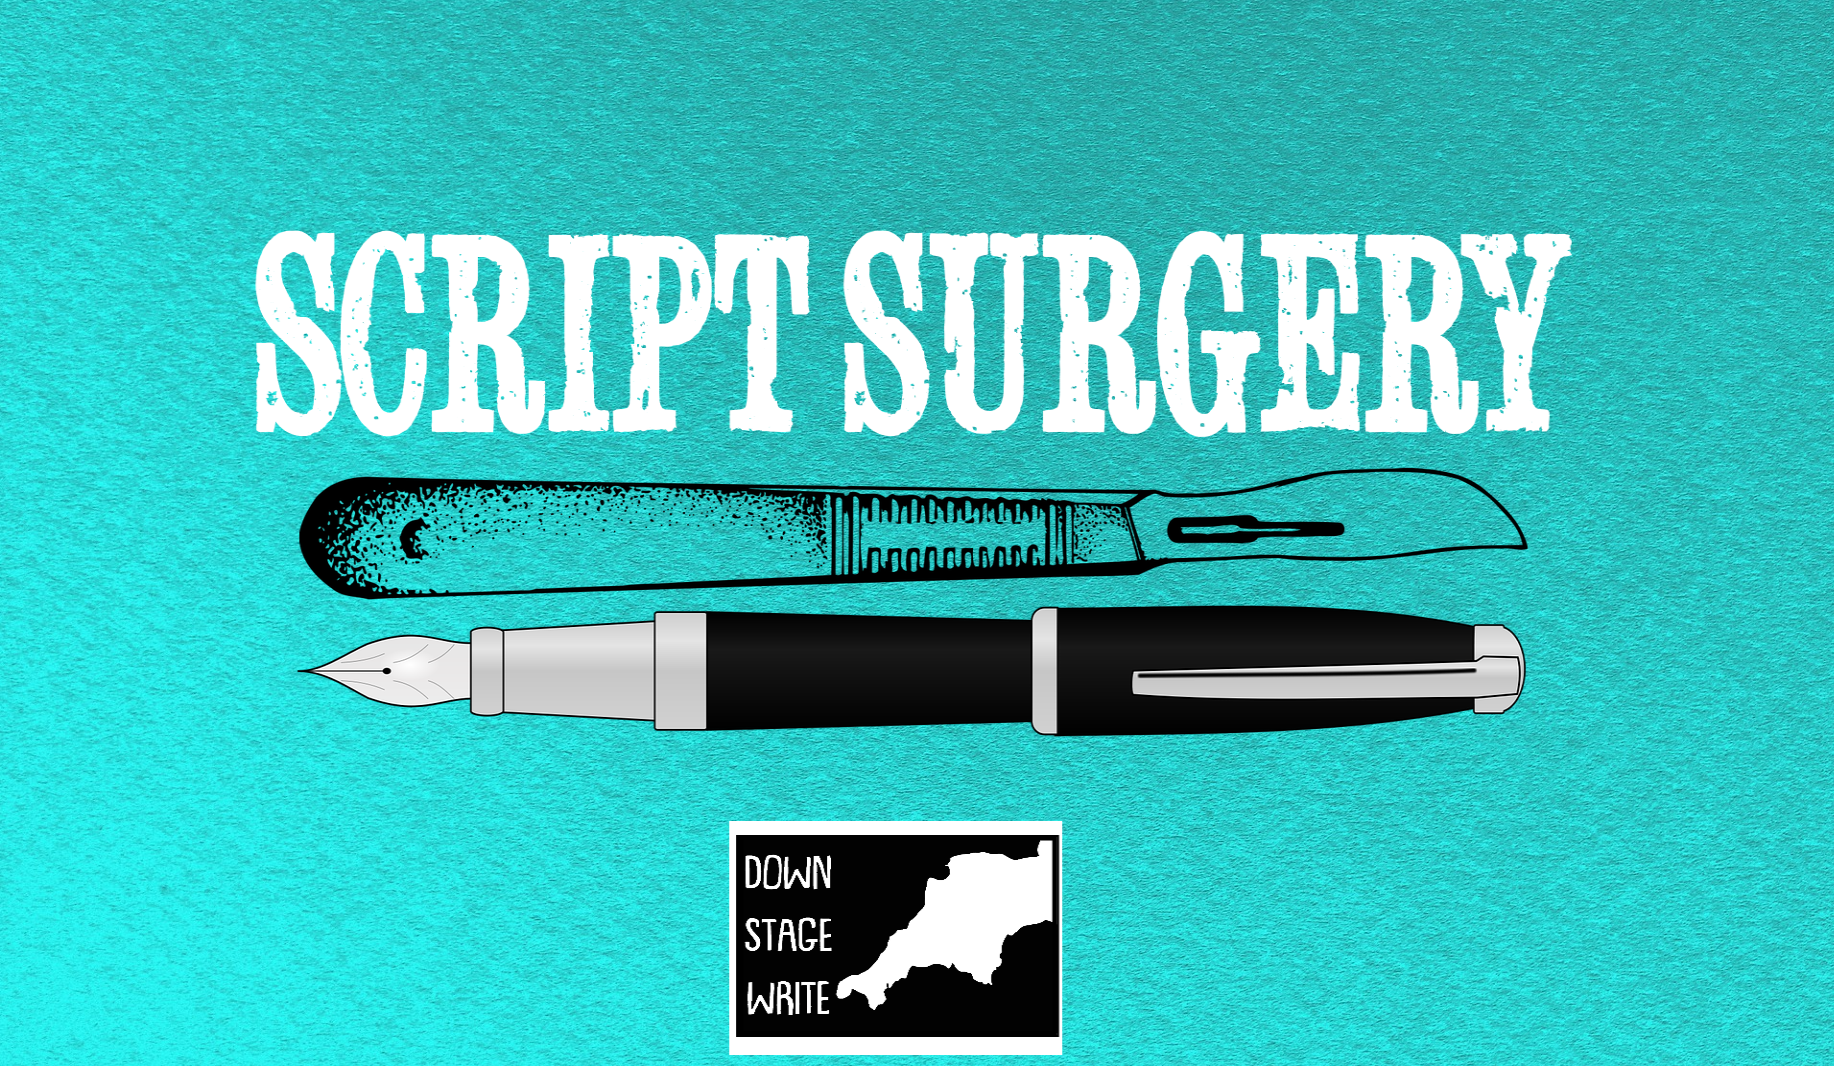 DSW  Script Surgery logo.png